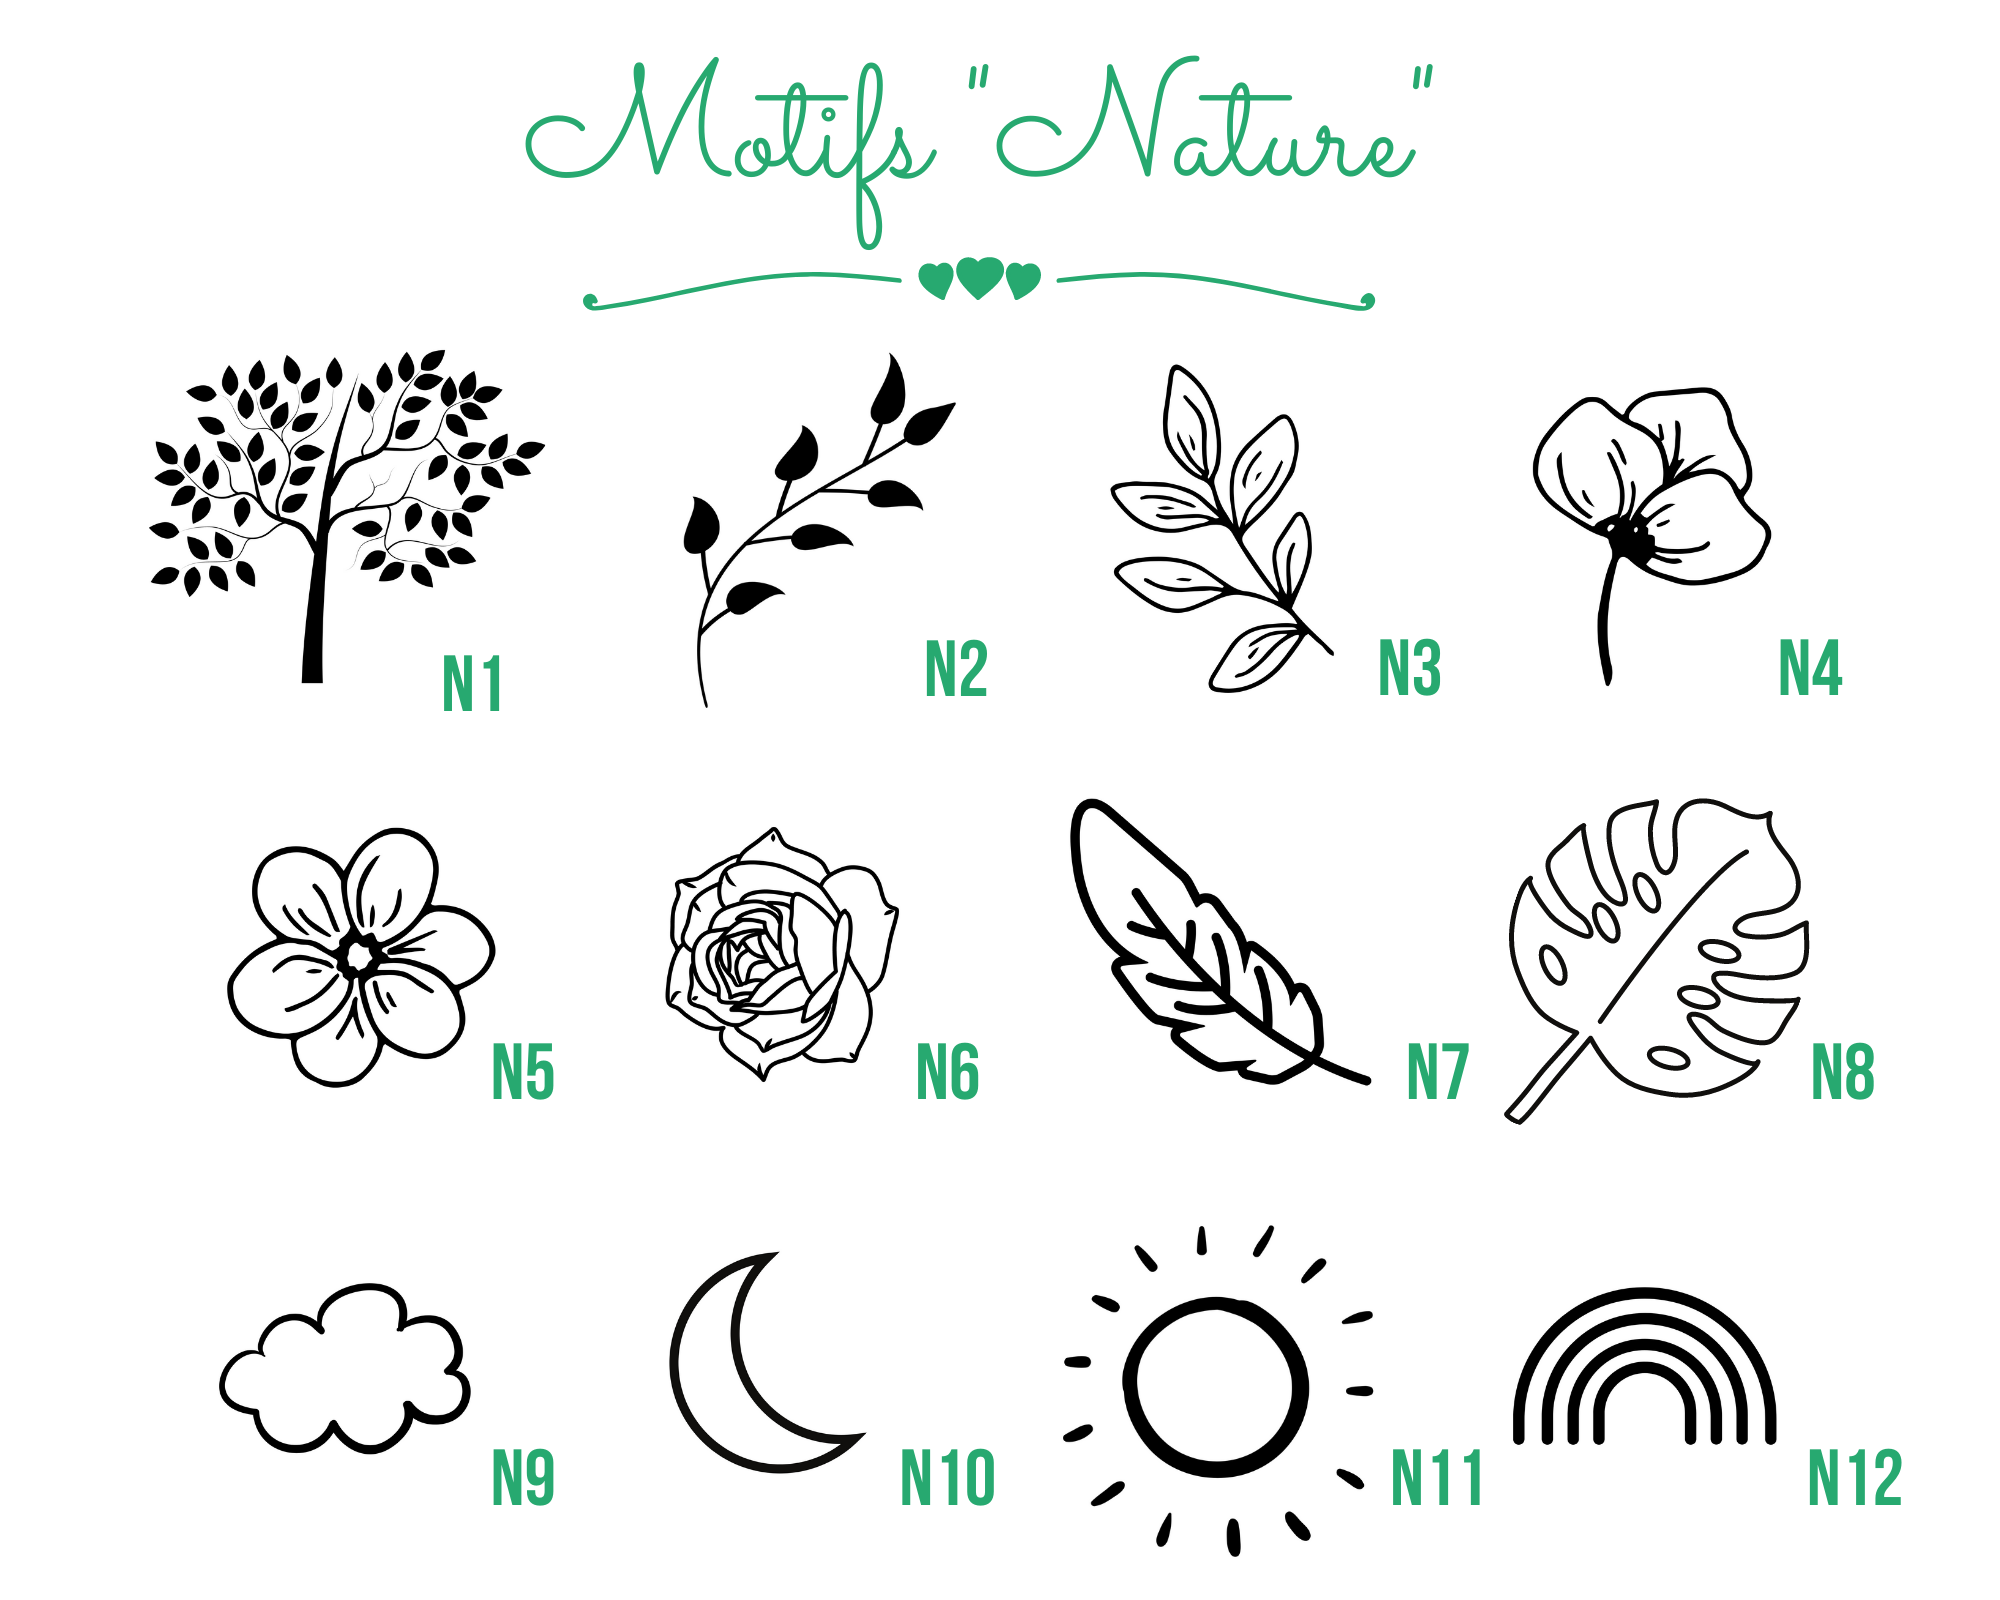 Motifs Nature (1)